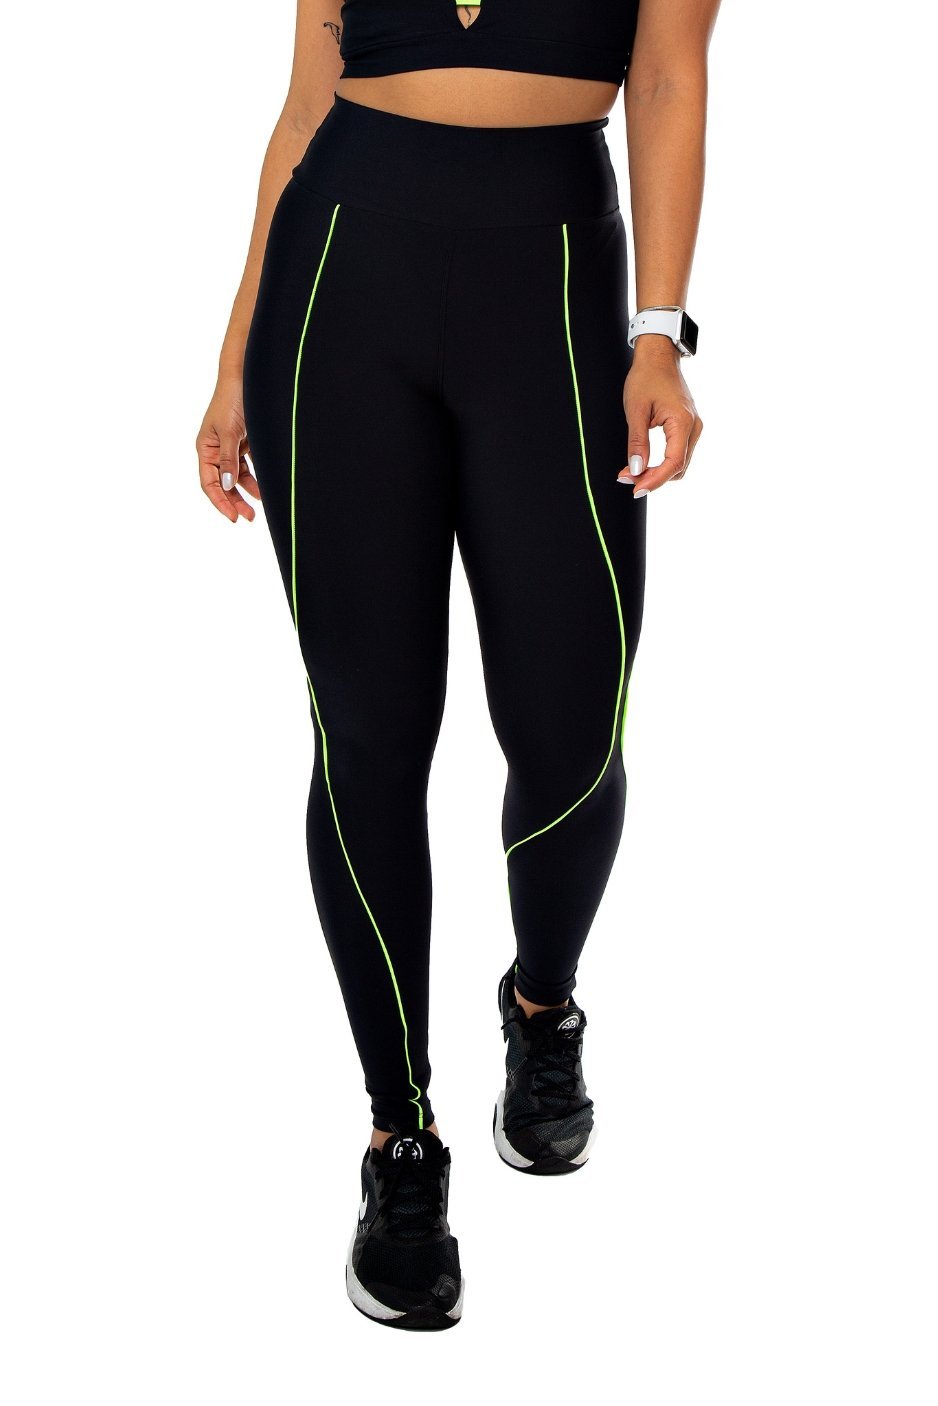 Abah Store - Moda fitness e acessórios Calça legging academia feminina zero  transparência 3D plus